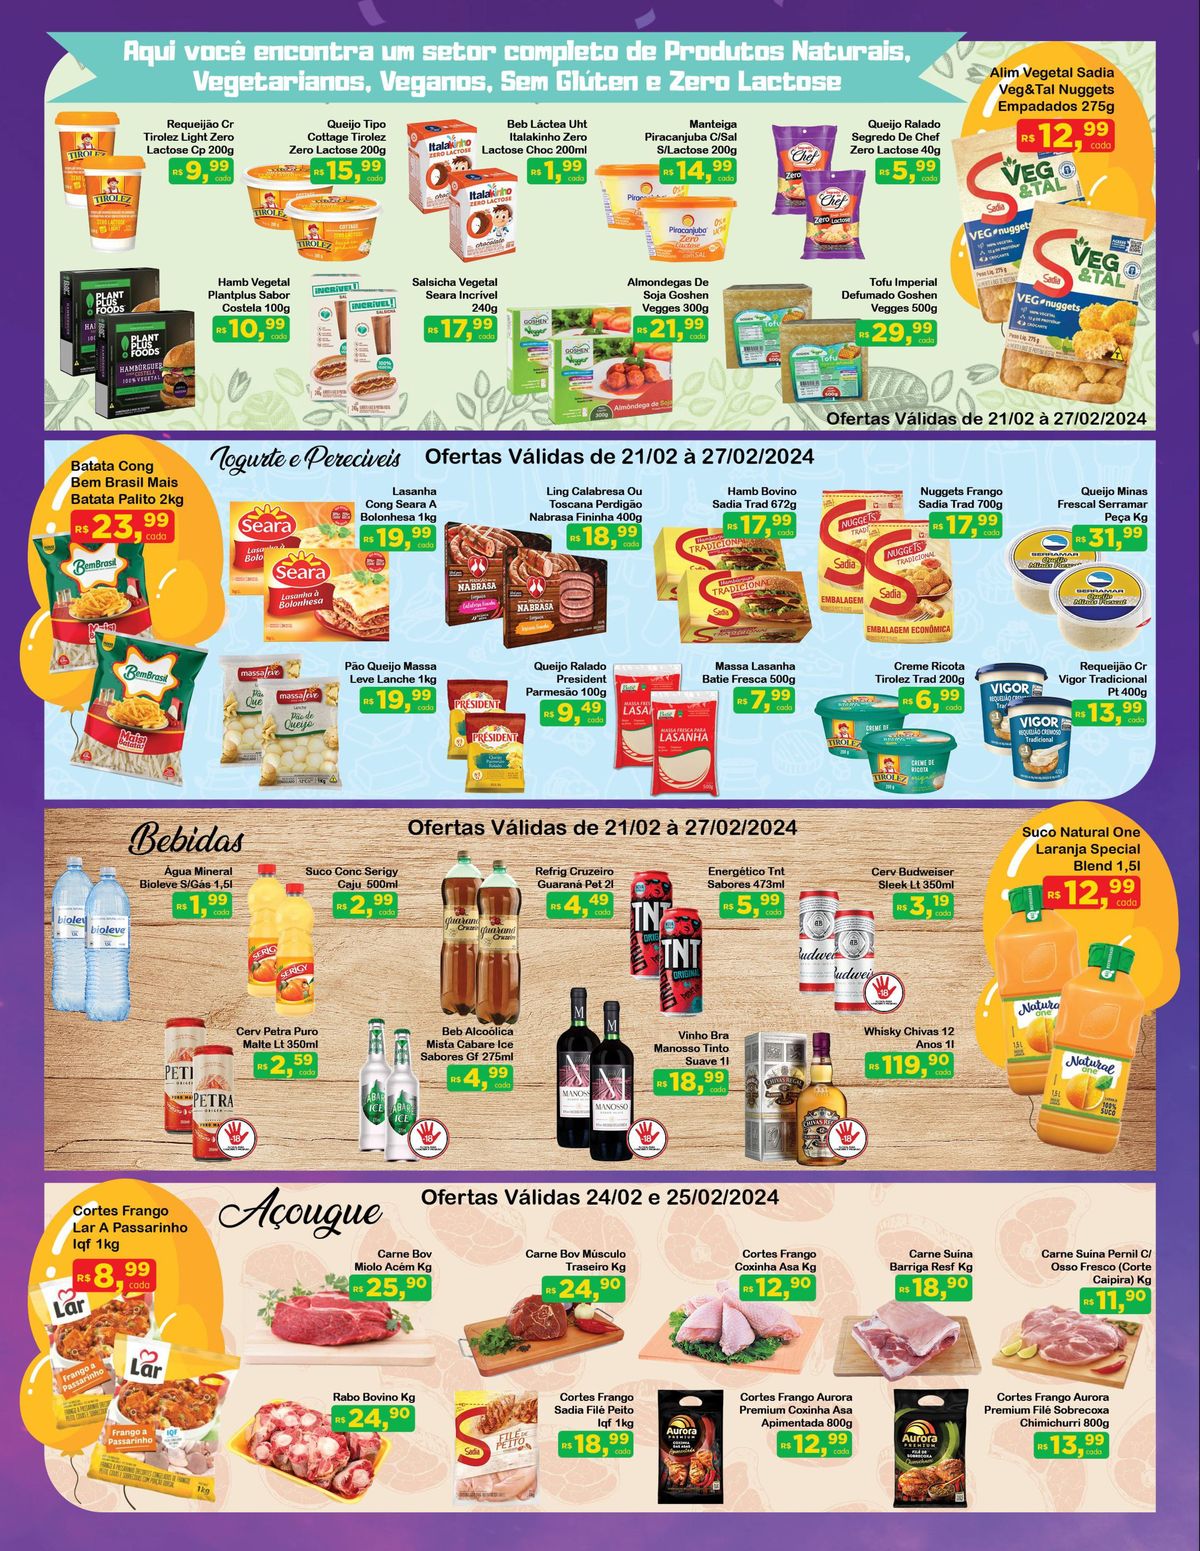 Promoções de Supermercado - Alim Vegetal Sadia, Queijos Tirolez, Batata Cong, Nuggets, Linguiça Cal